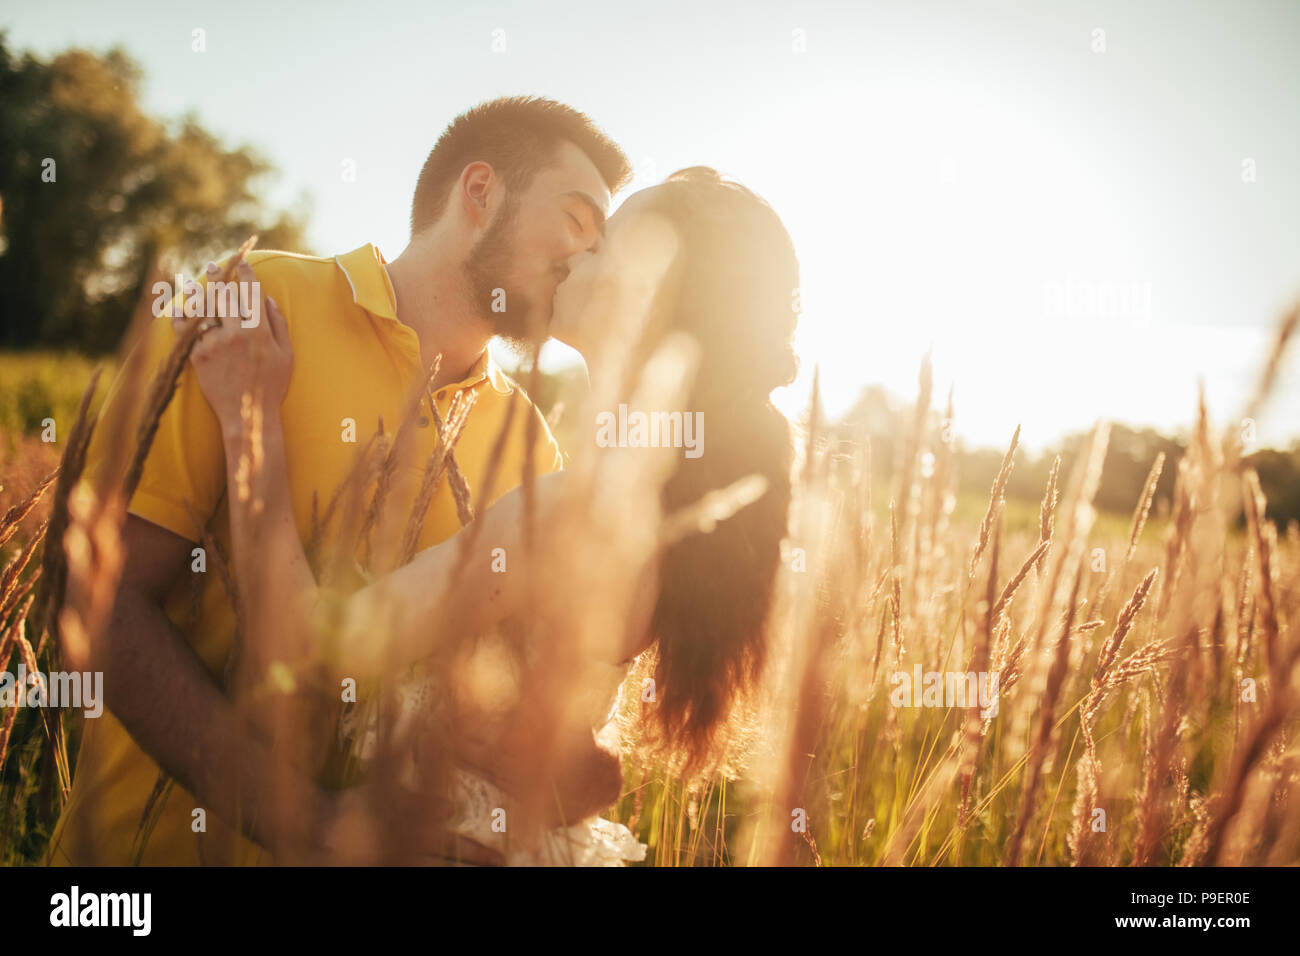 Junge verliebte Paar Küsse und Umarmungen am Wiese gegen den Hintergrund von Gras und Spikes. Mit Hintergrundbeleuchtung. Stockfoto